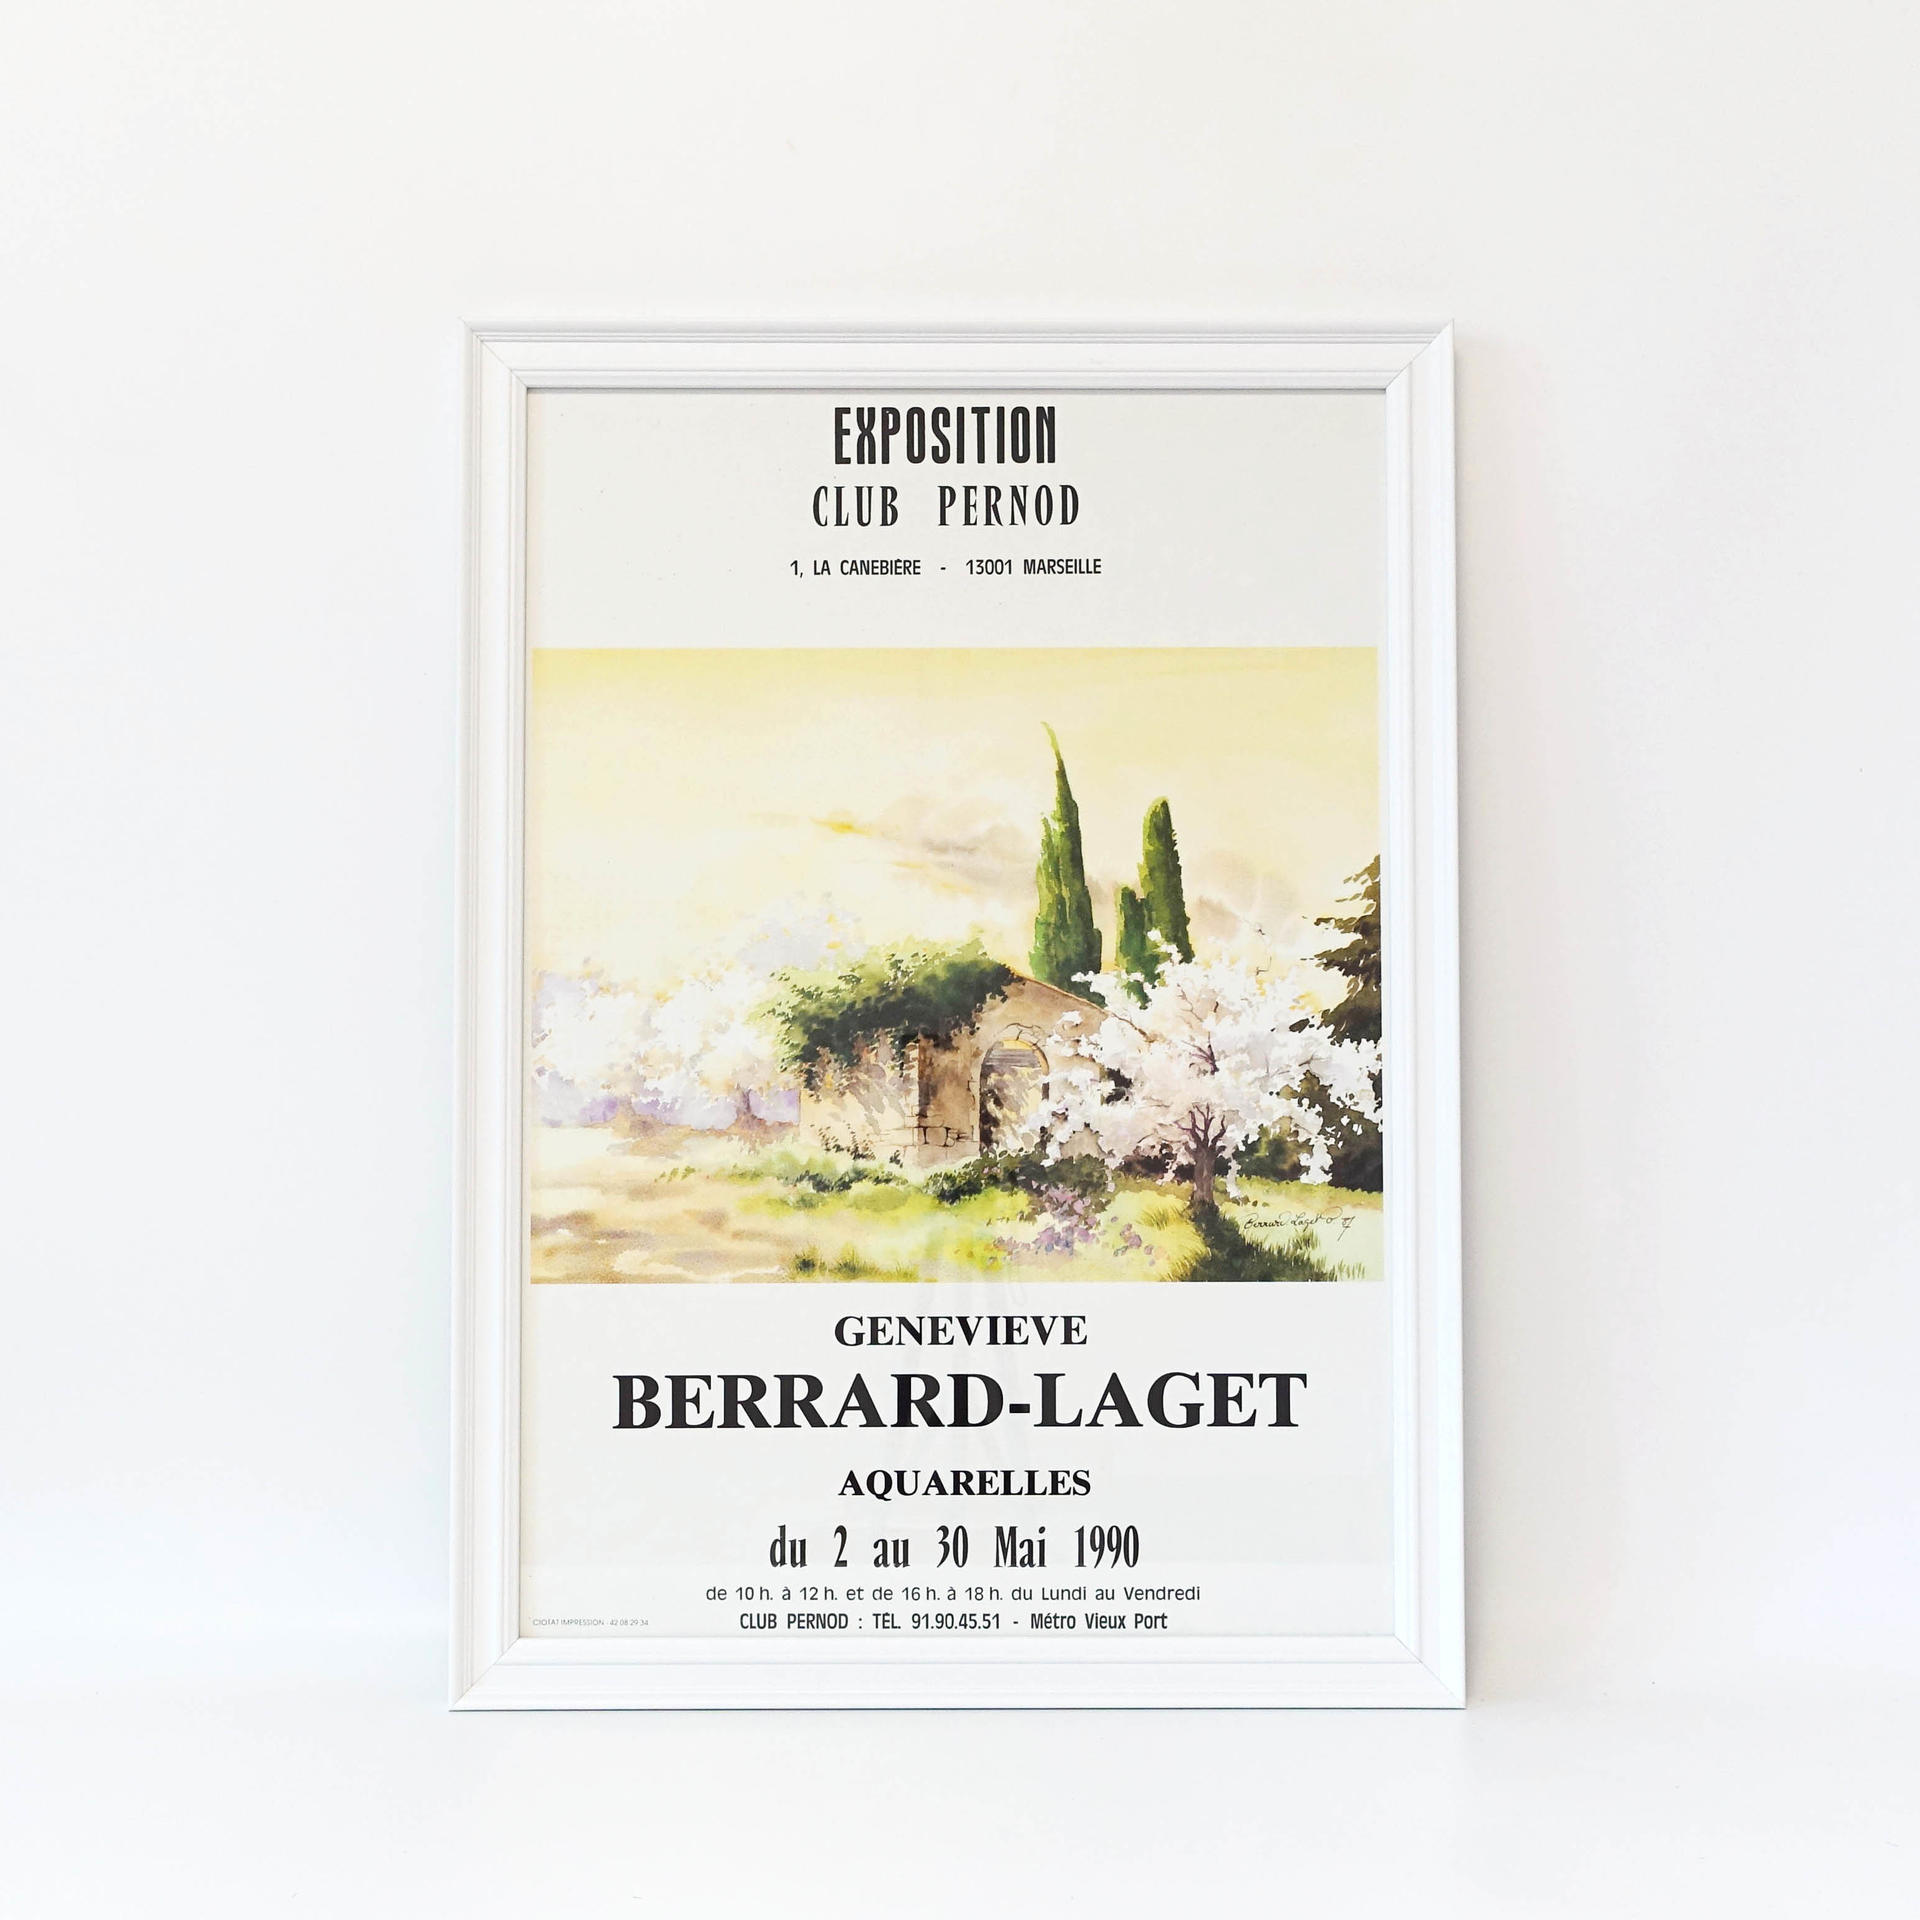 BERRARD-LAGET - ART 90s (액자 포함), BENUFE, 자리 스튜디오